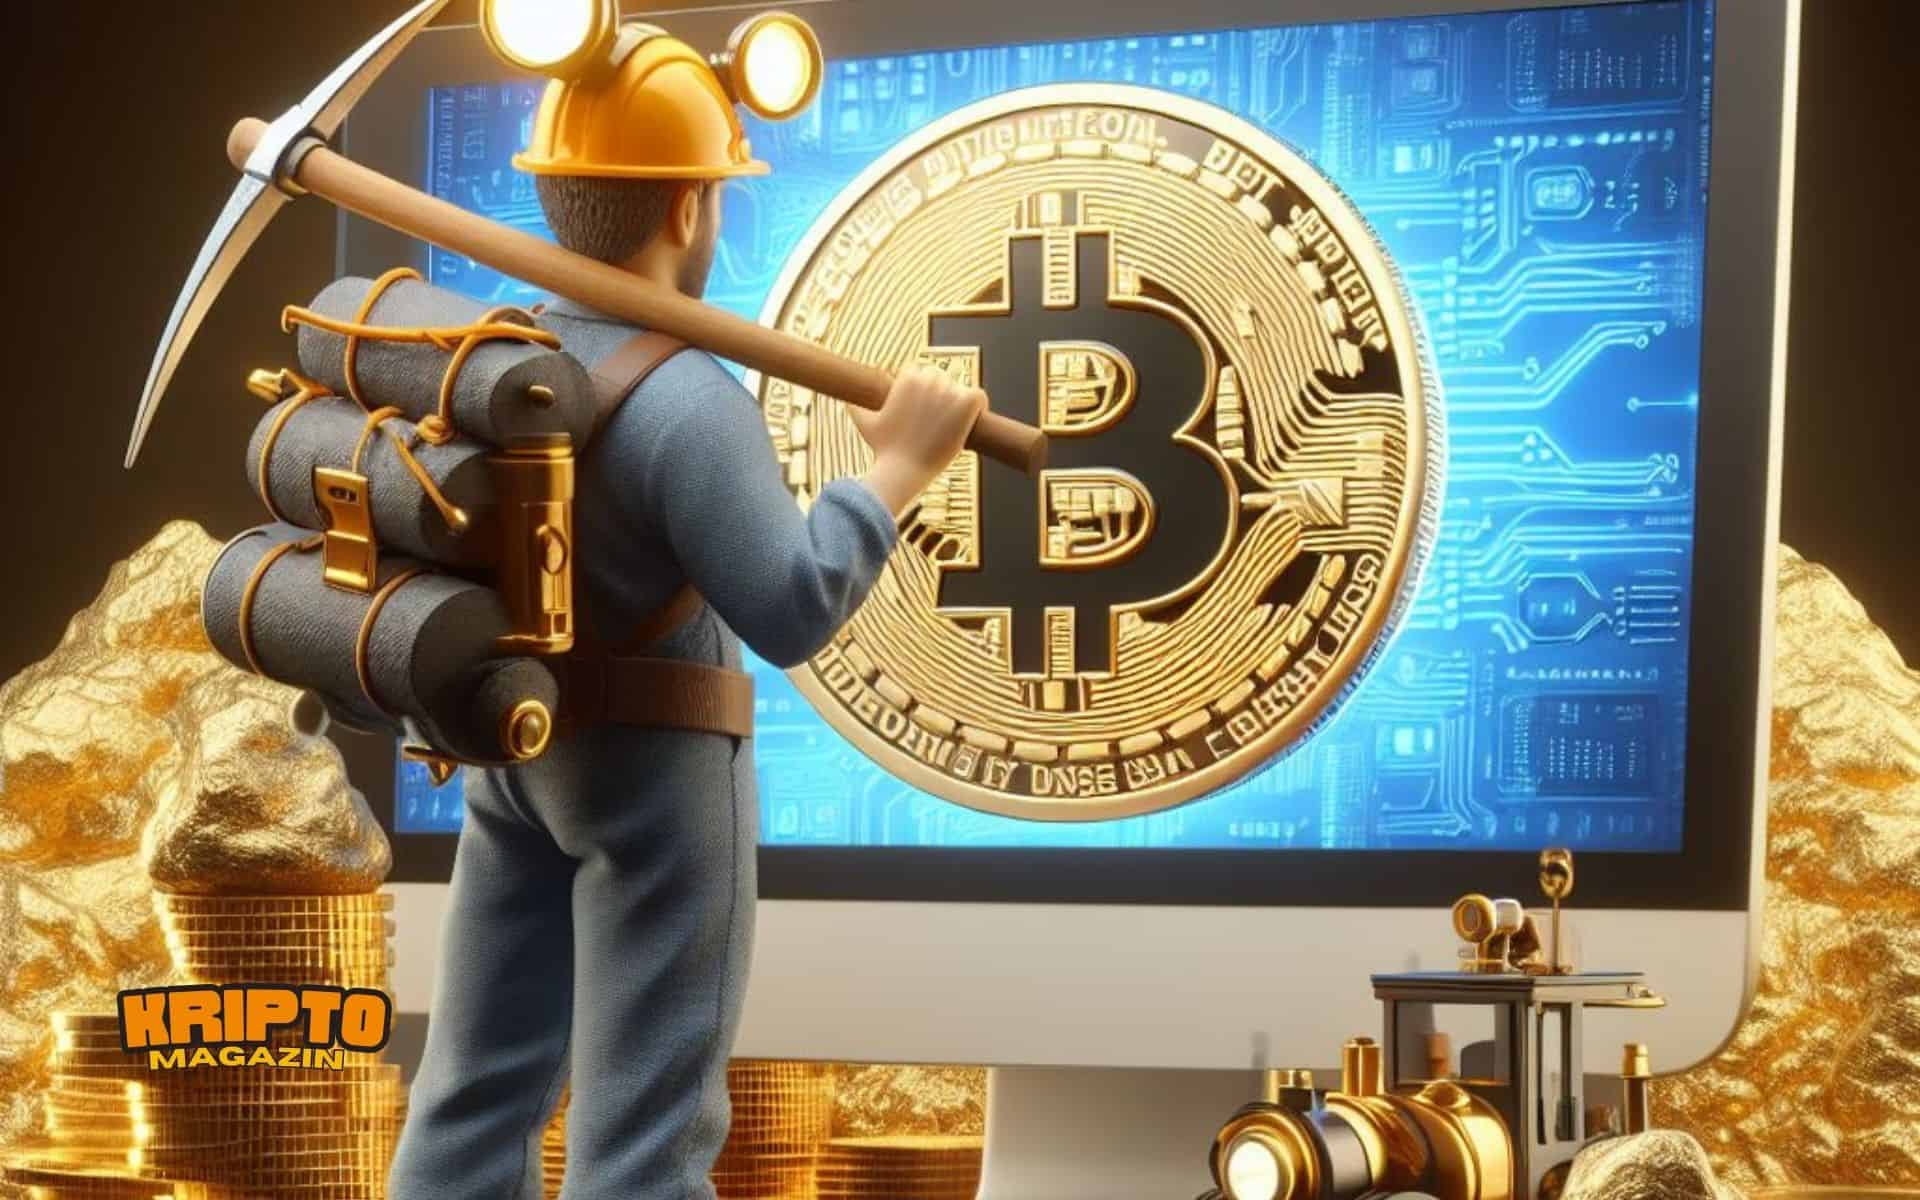 Kriptomagazin bitcoin banyasz